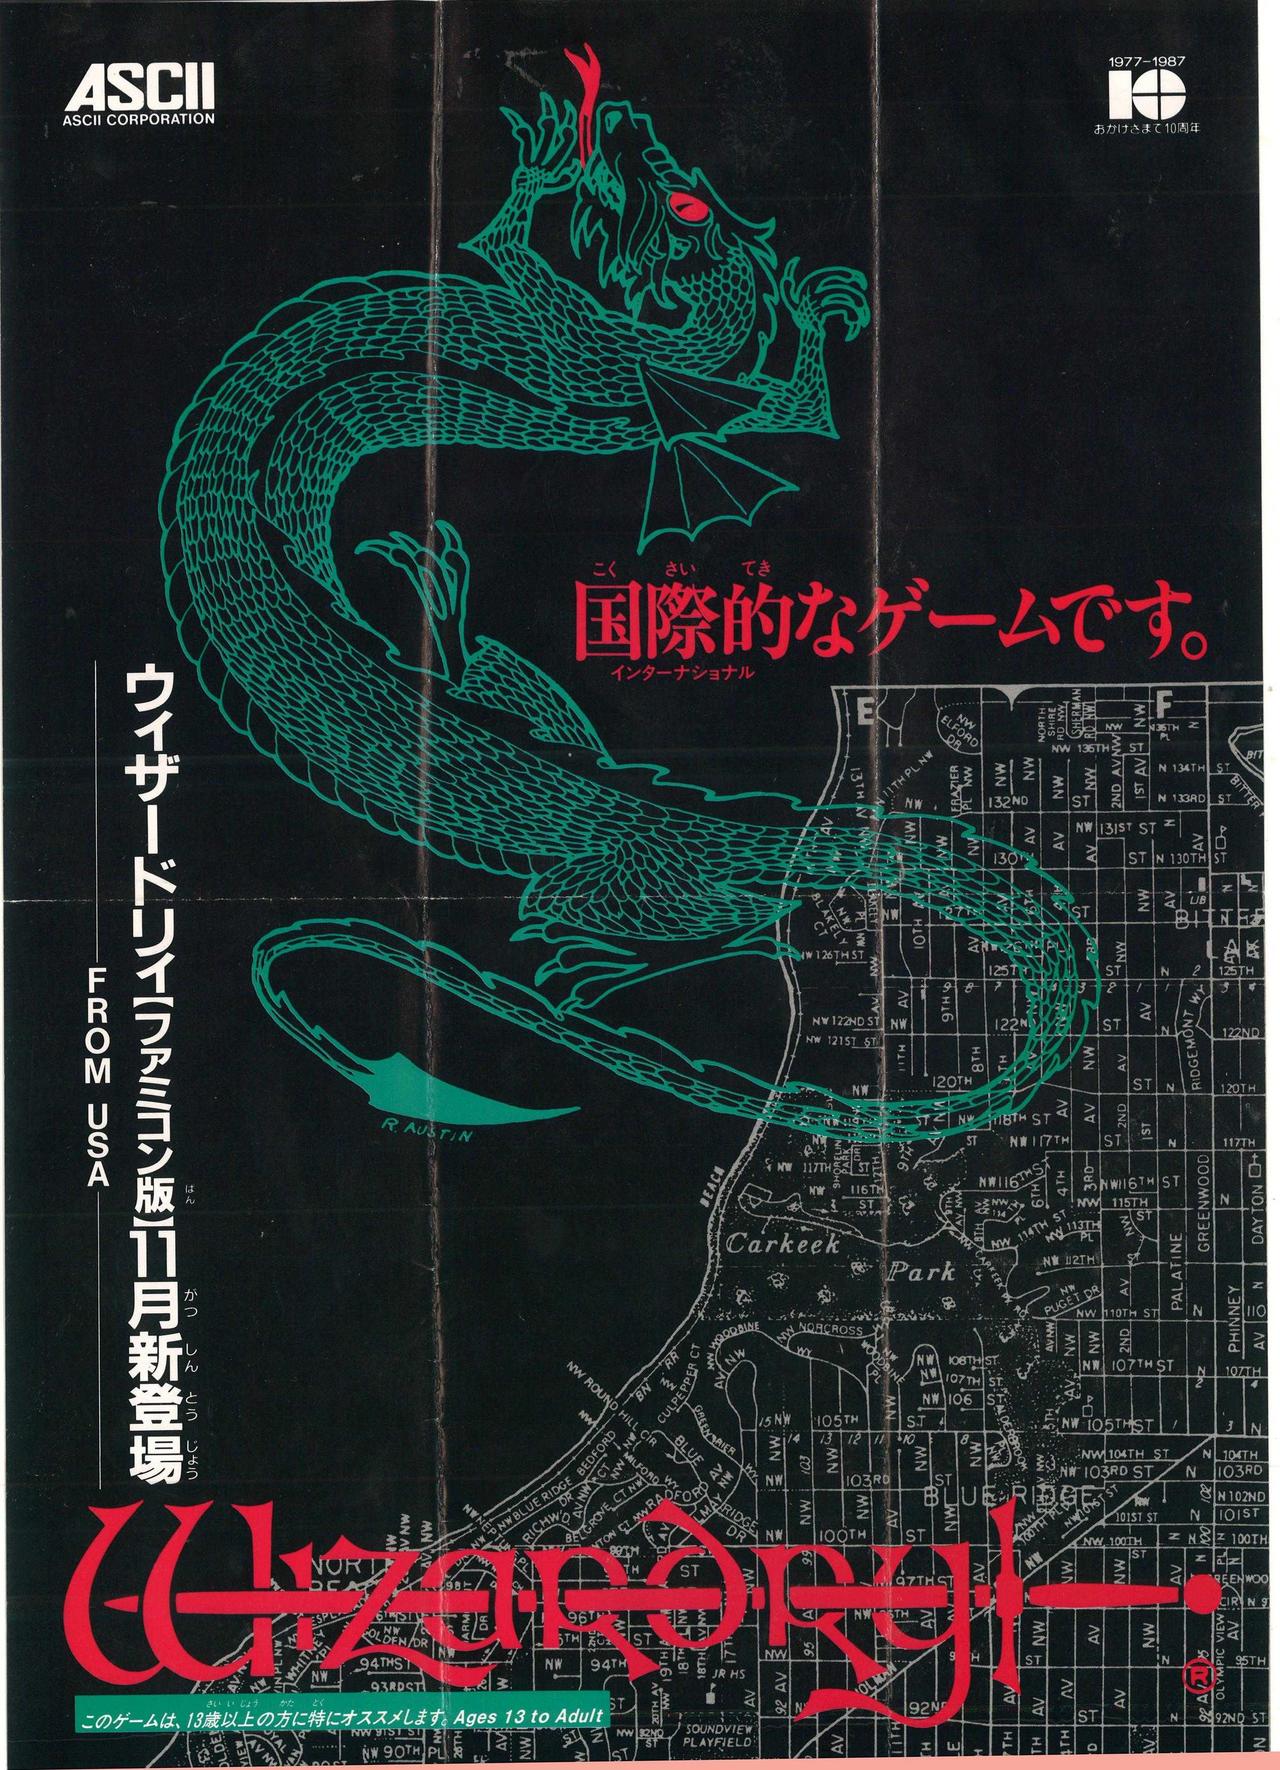 上面两幅图为1987年 ASCII 出品的《巫术1》FC 日版的宣传海报（正反面），为笔者收藏品。左下角赫然写着“FROM USA”，证明《巫术》系列在日本，从最初起，其宣传定位就是“高贵的舶来品”。